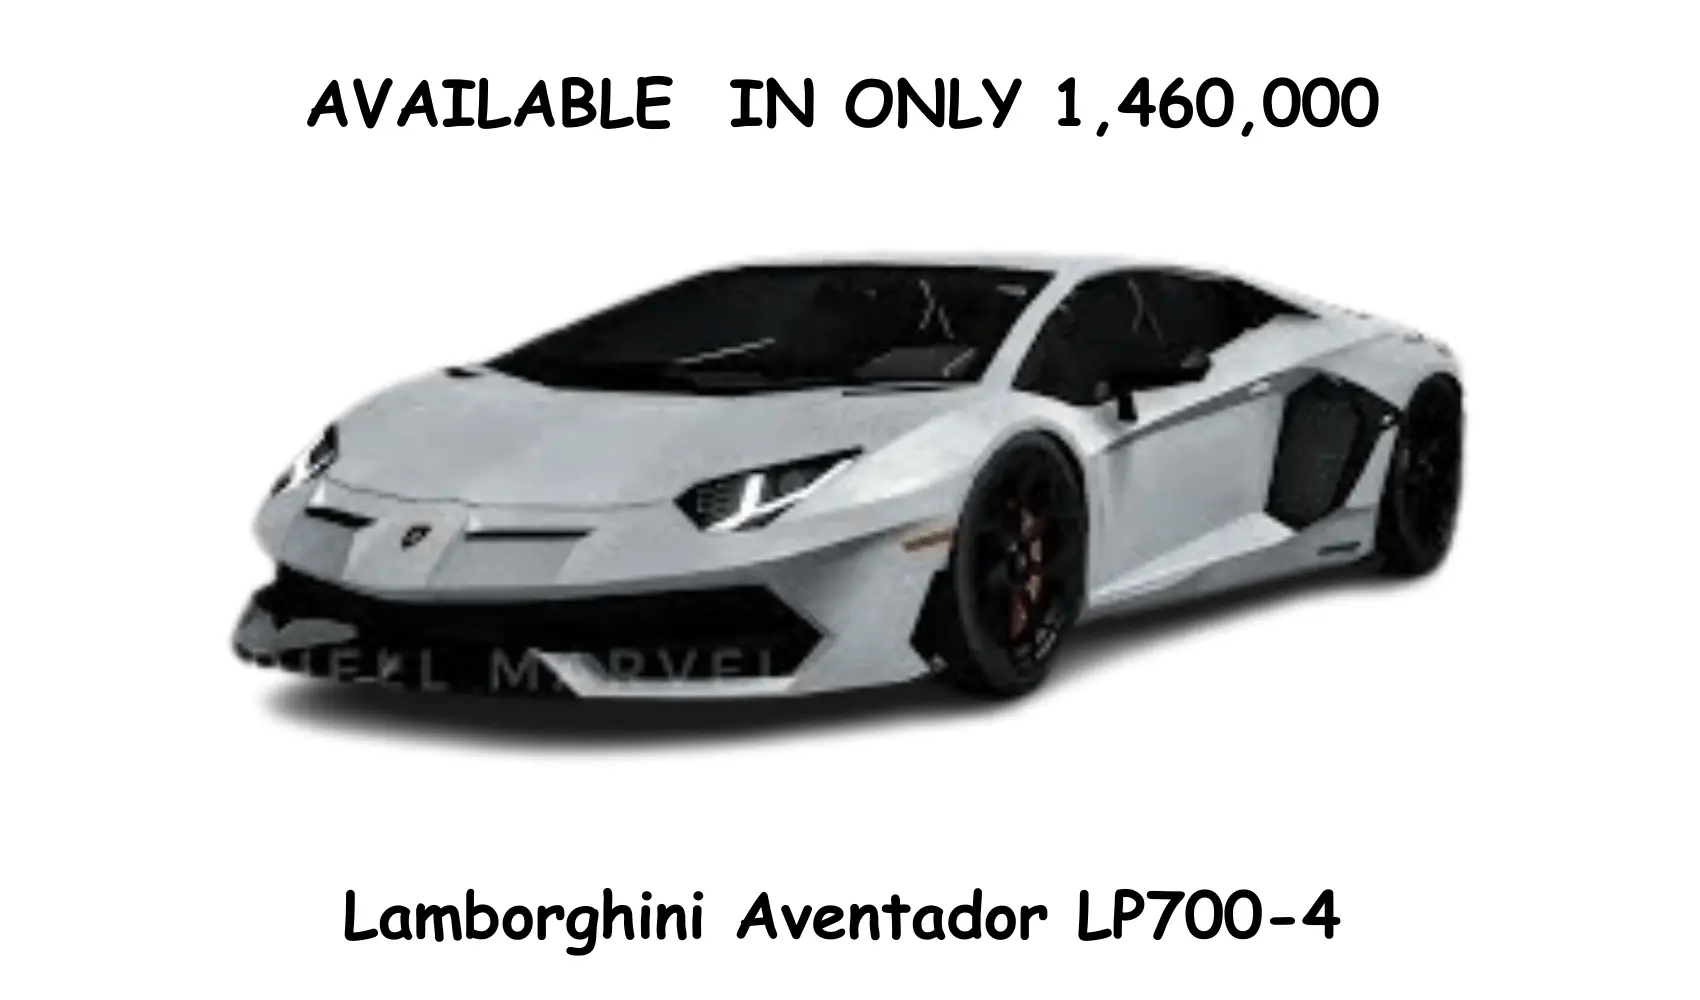 Lamborghini Aventador LP700-4 PRICE IN CAR PARKING MULTIPLAYER